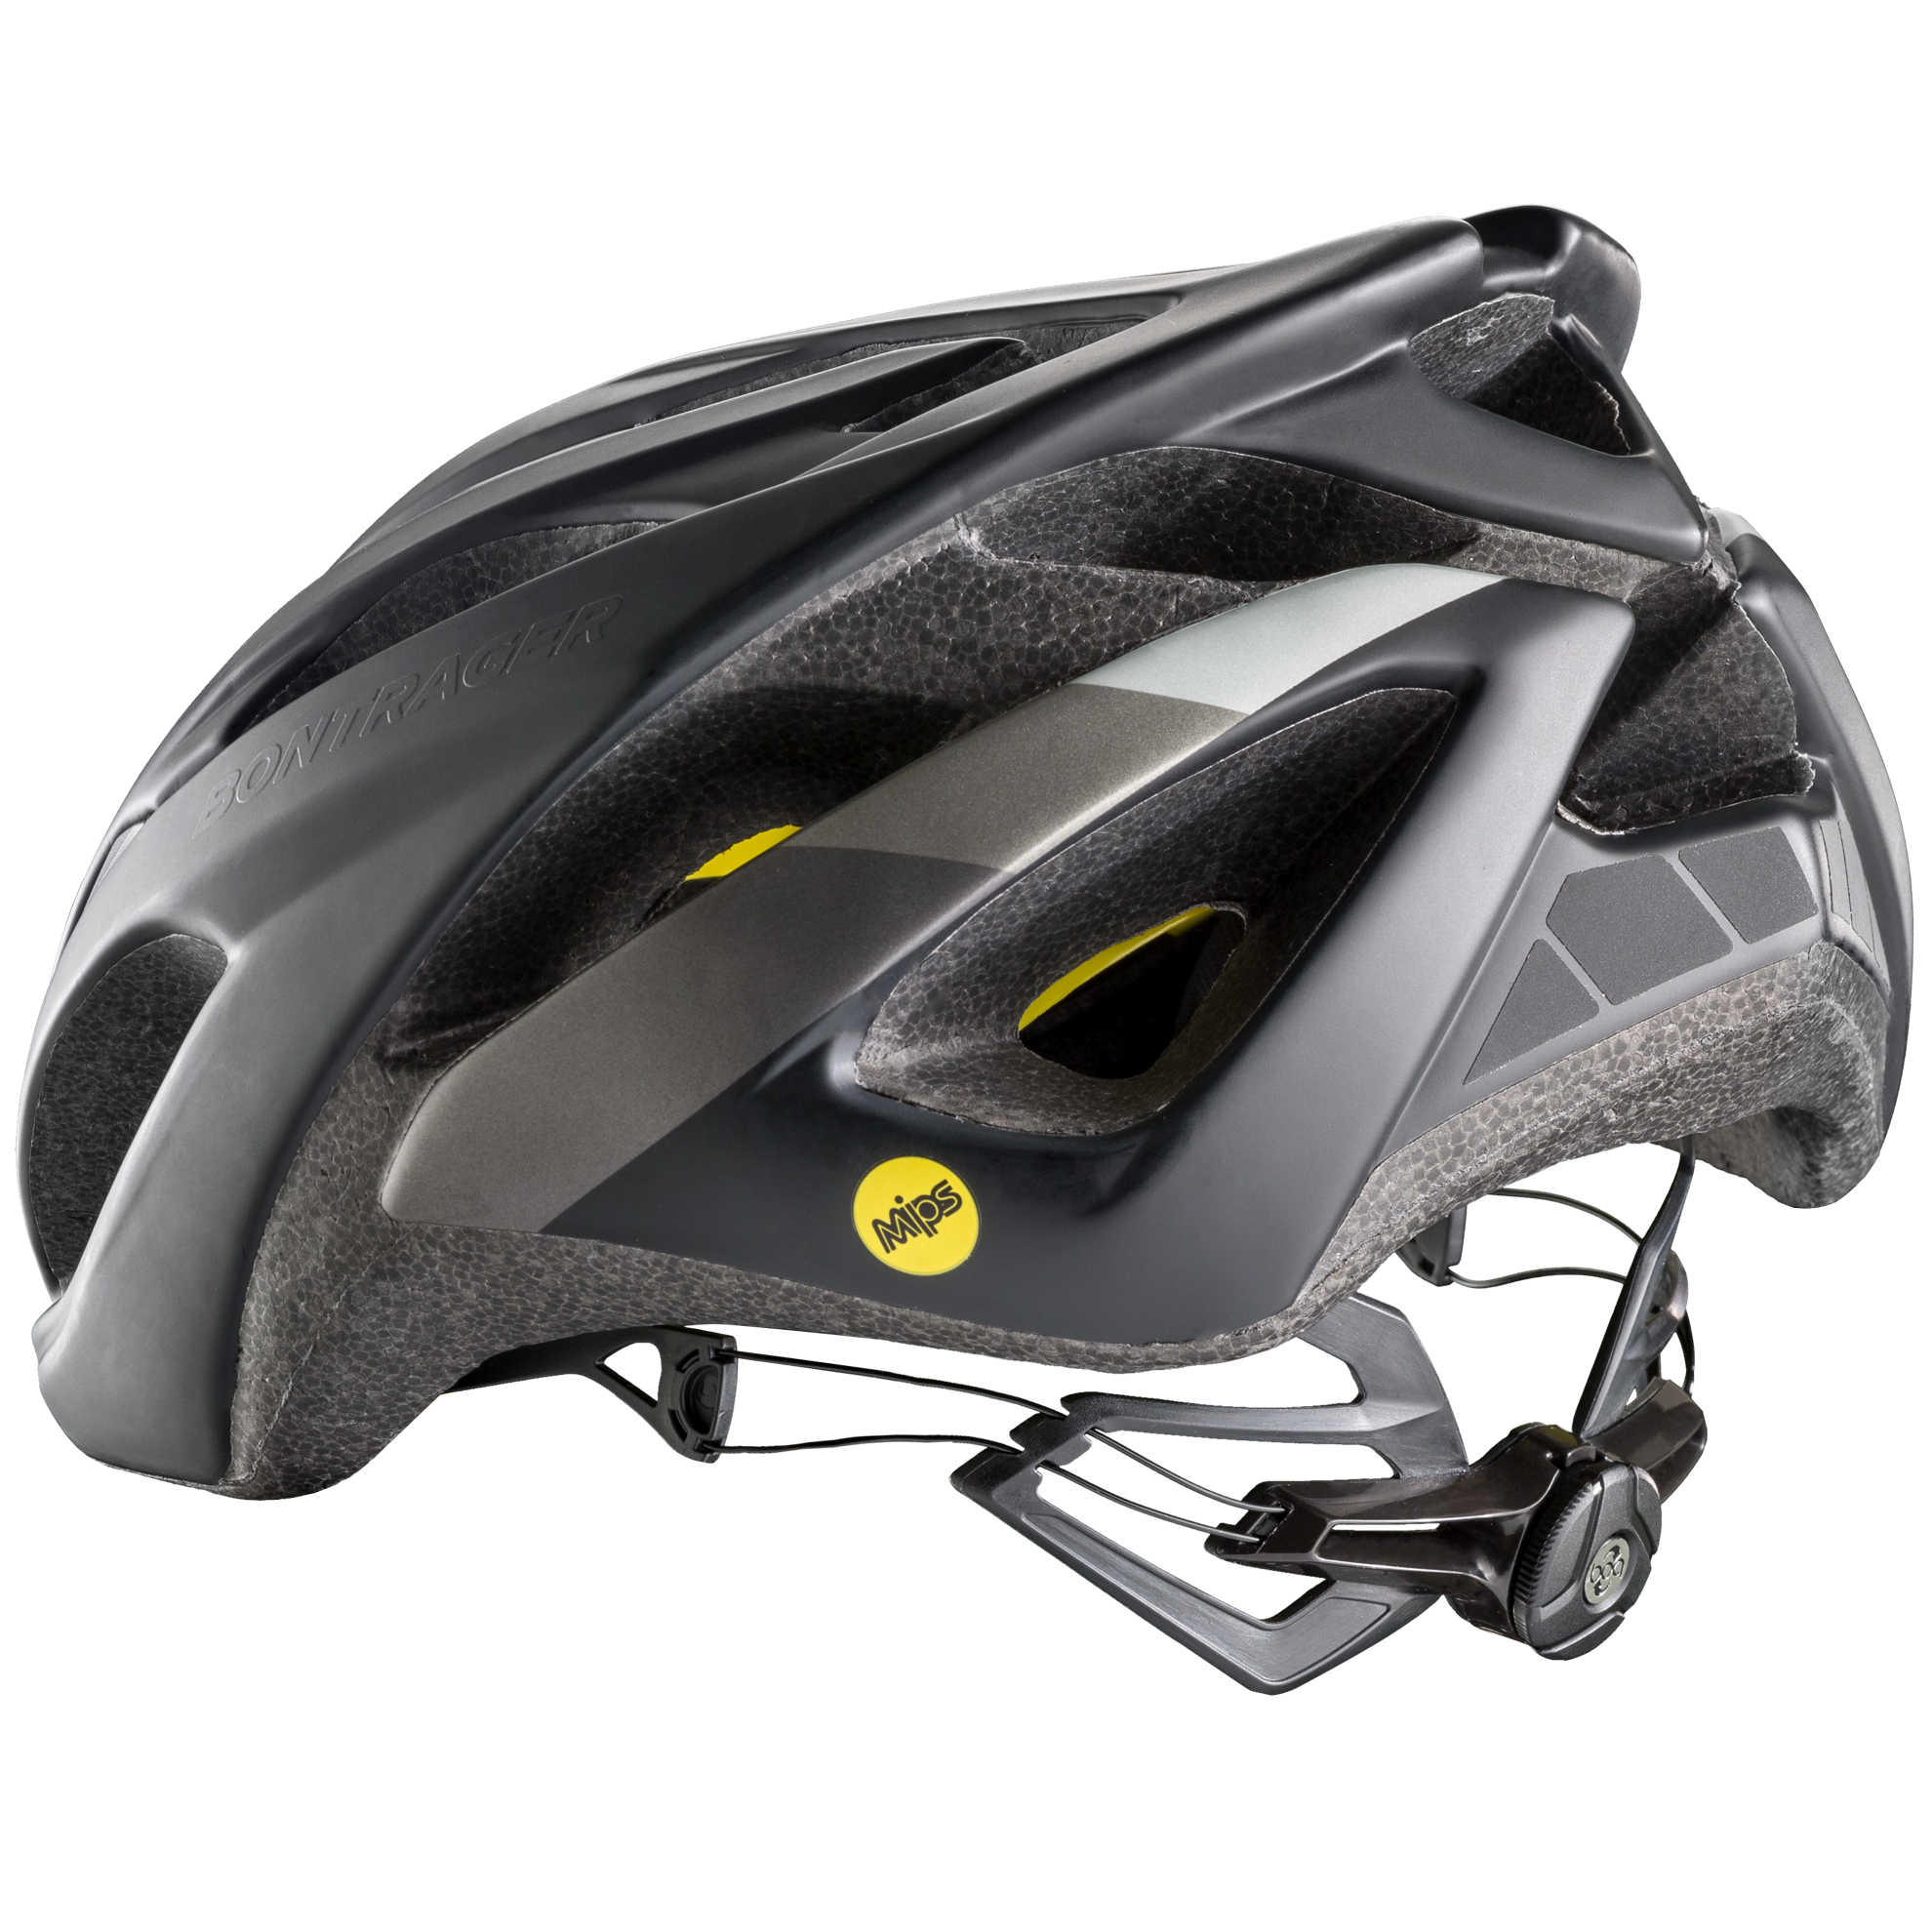 starvos road bike helmet